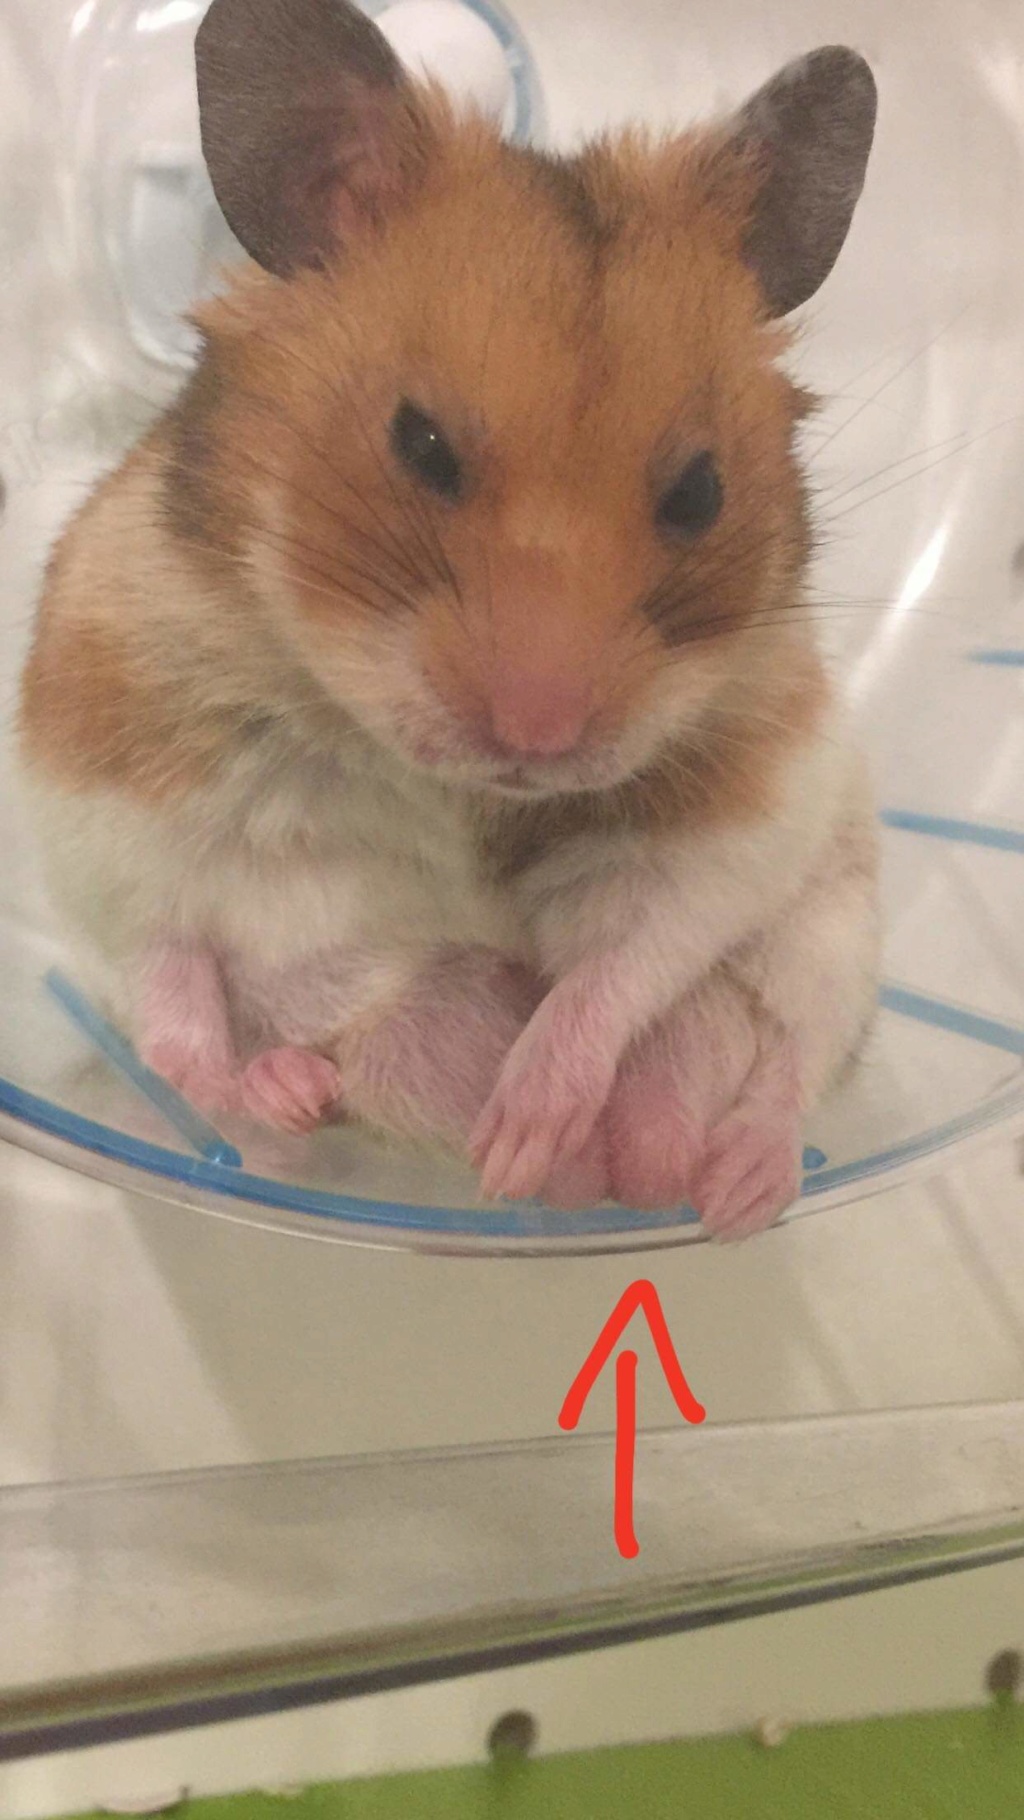 Mon hamster ne bouge plus que faire HELP - Alimentation - Nimo